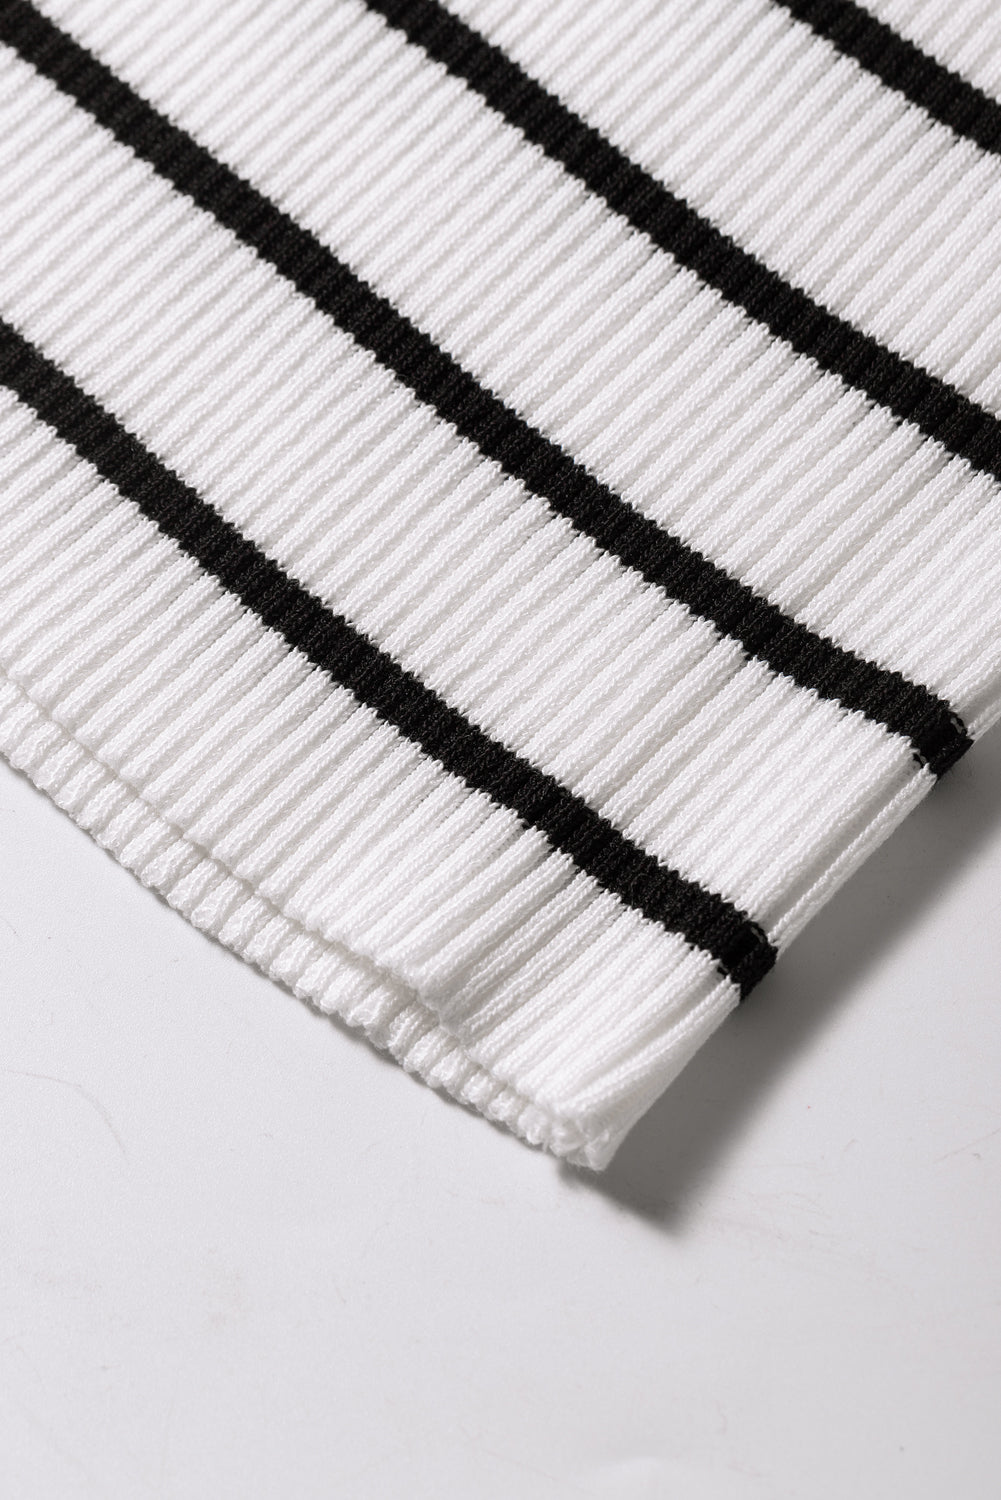 Maglione con stampa a righe con finiture smerlate bianche